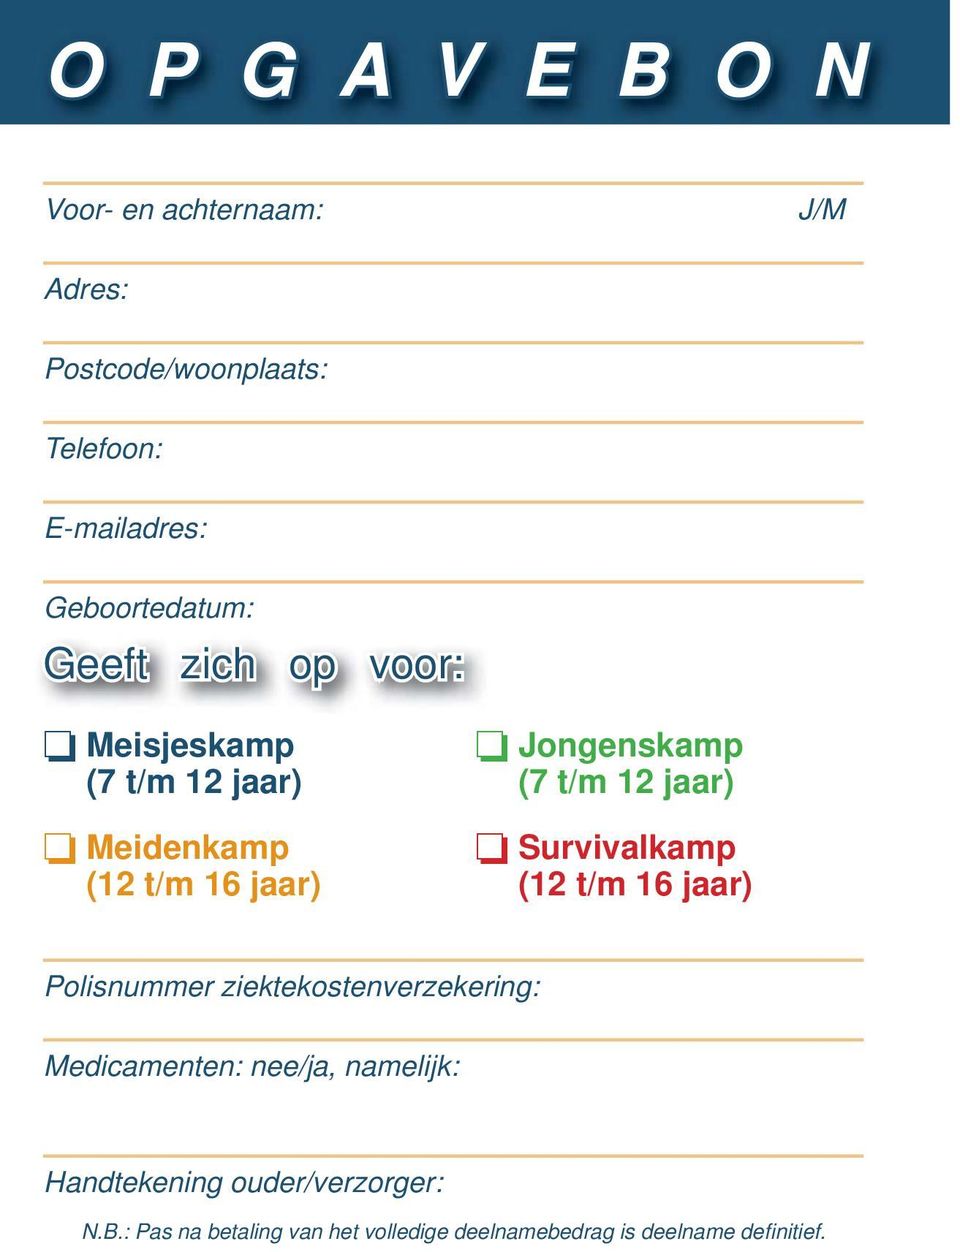 Survivalkamp (12 t/m 16 jaar) (12 t/m 16 jaar) Polisnummer ziektekostenverzekering: Medicamenten: nee/ja,